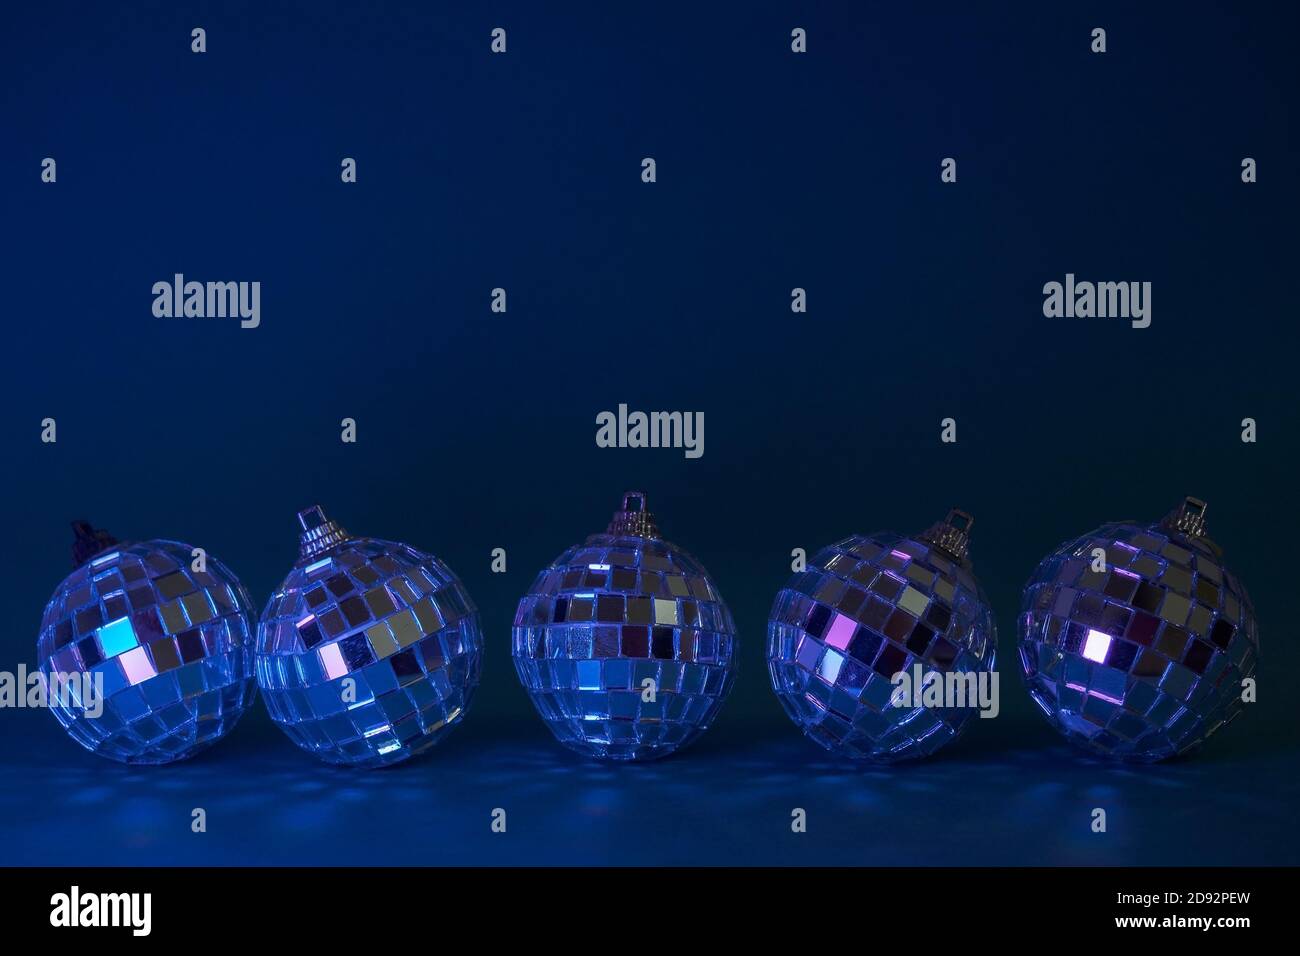 Cinq boules de noël disco sur fond bleu foncé. Concept pour noël, fête et carte du nouvel an. Copier l'espace Banque D'Images